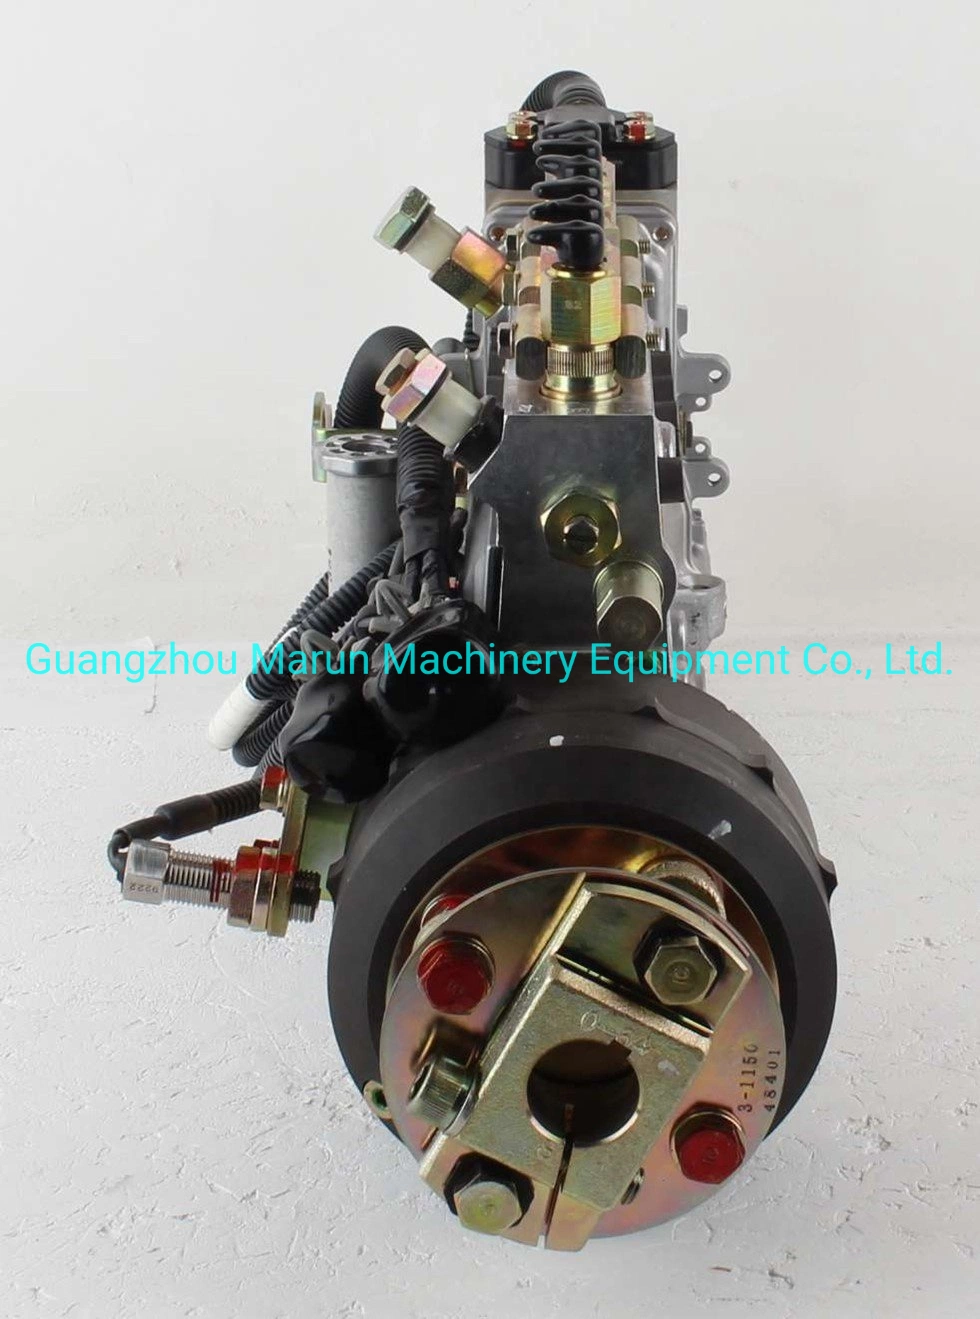 Bomba de injeção de combustível do motor Zexel de alta qualidade para combustível 6D16t Conjunto da bomba 101608-6353 Me440455